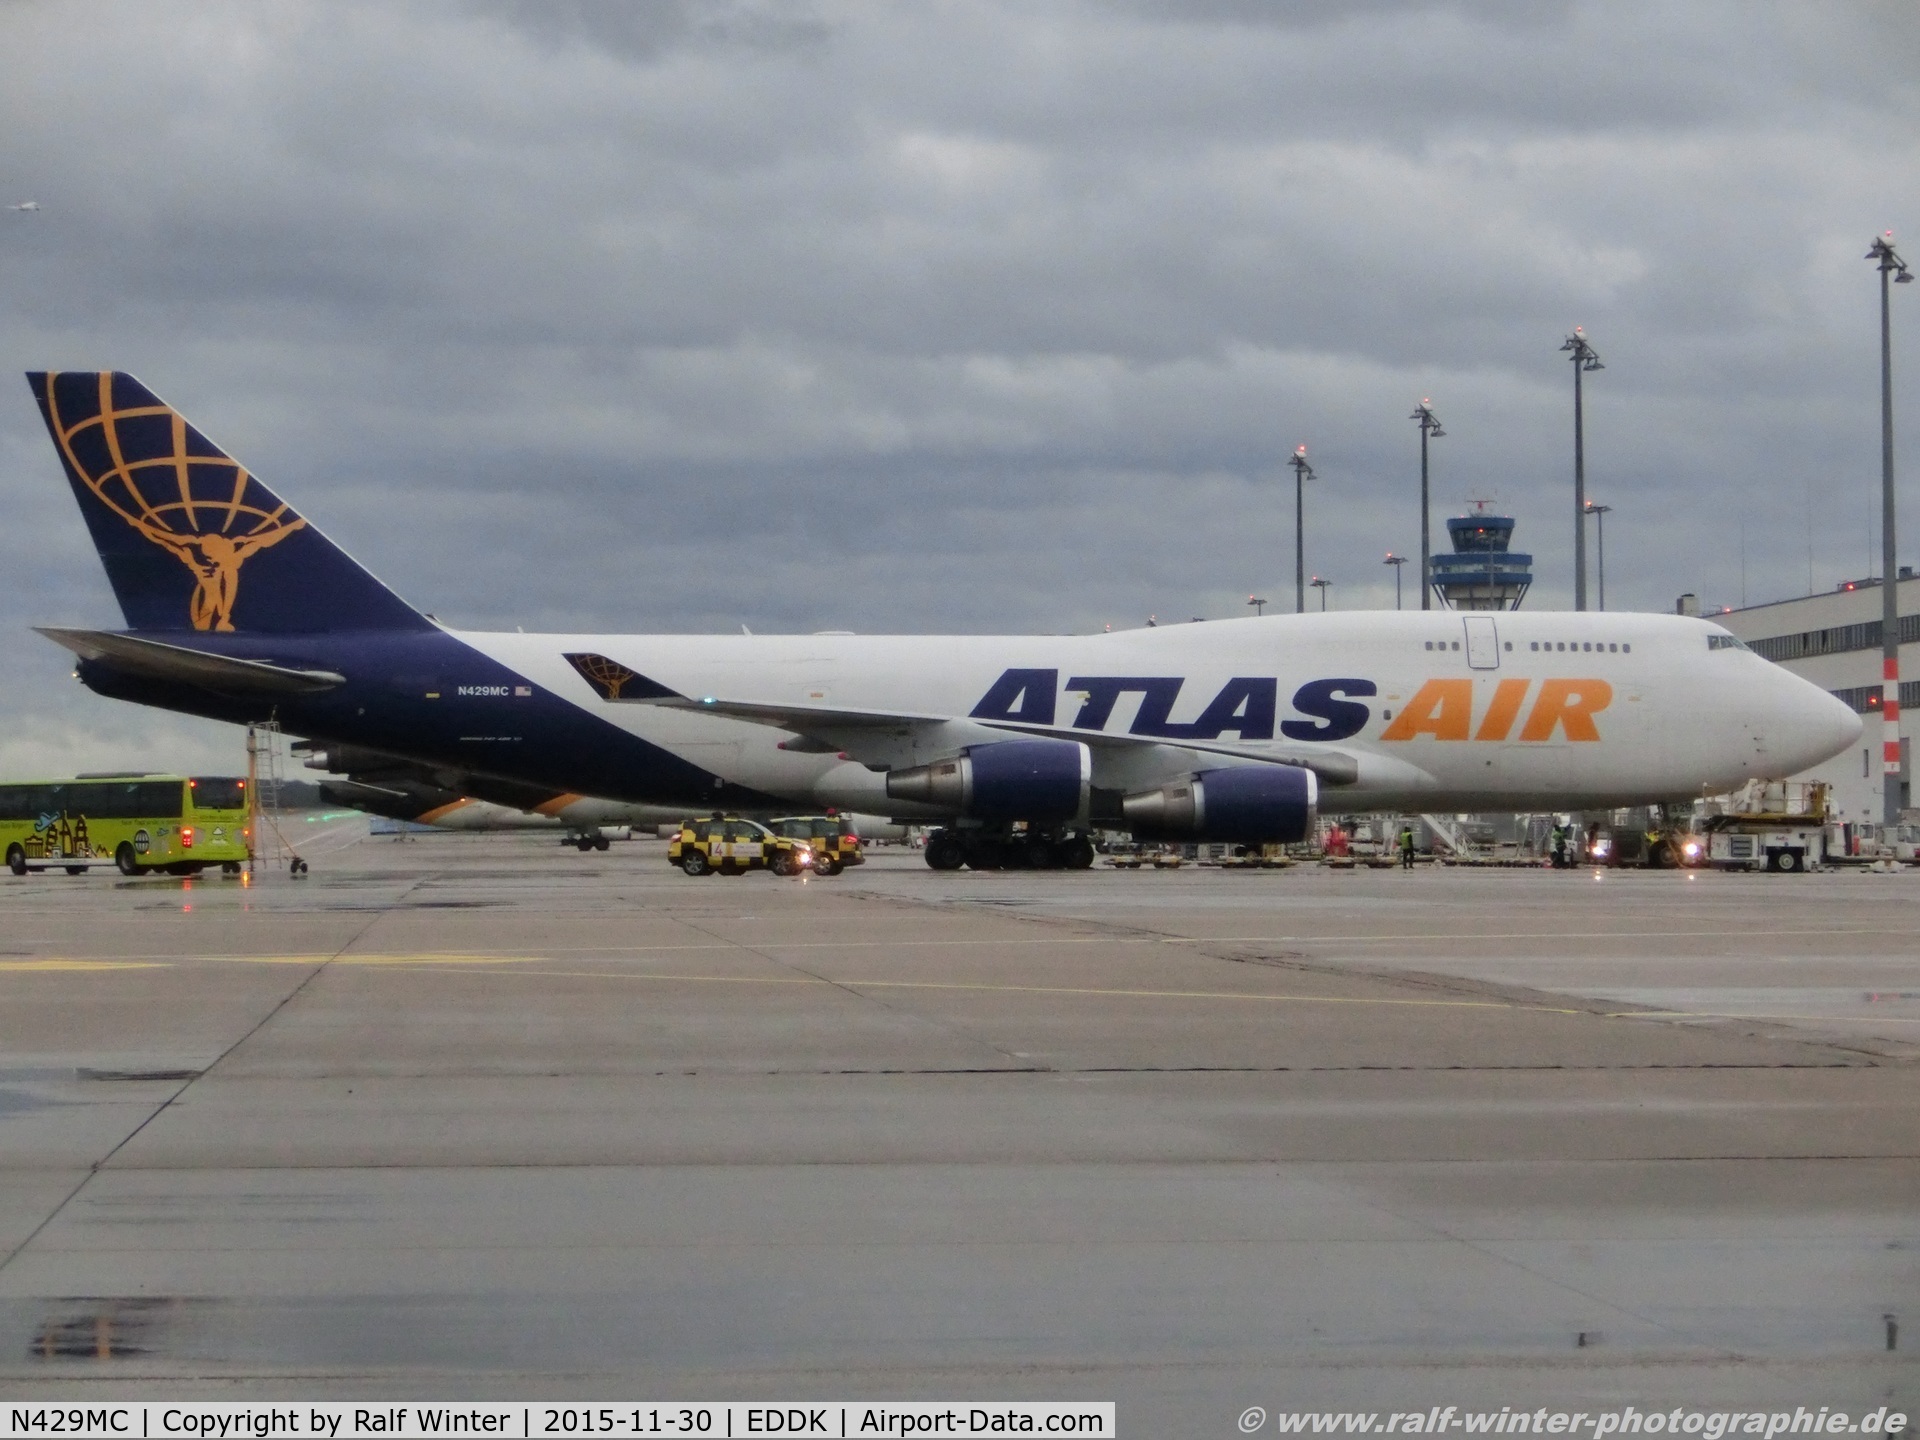 N429MC, 1990 Boeing 747-481 C/N 24833, Boeing 747-481 - 5Y GTI Atlas Air - 24833 - N429MC - 30.11.2015 - CGN